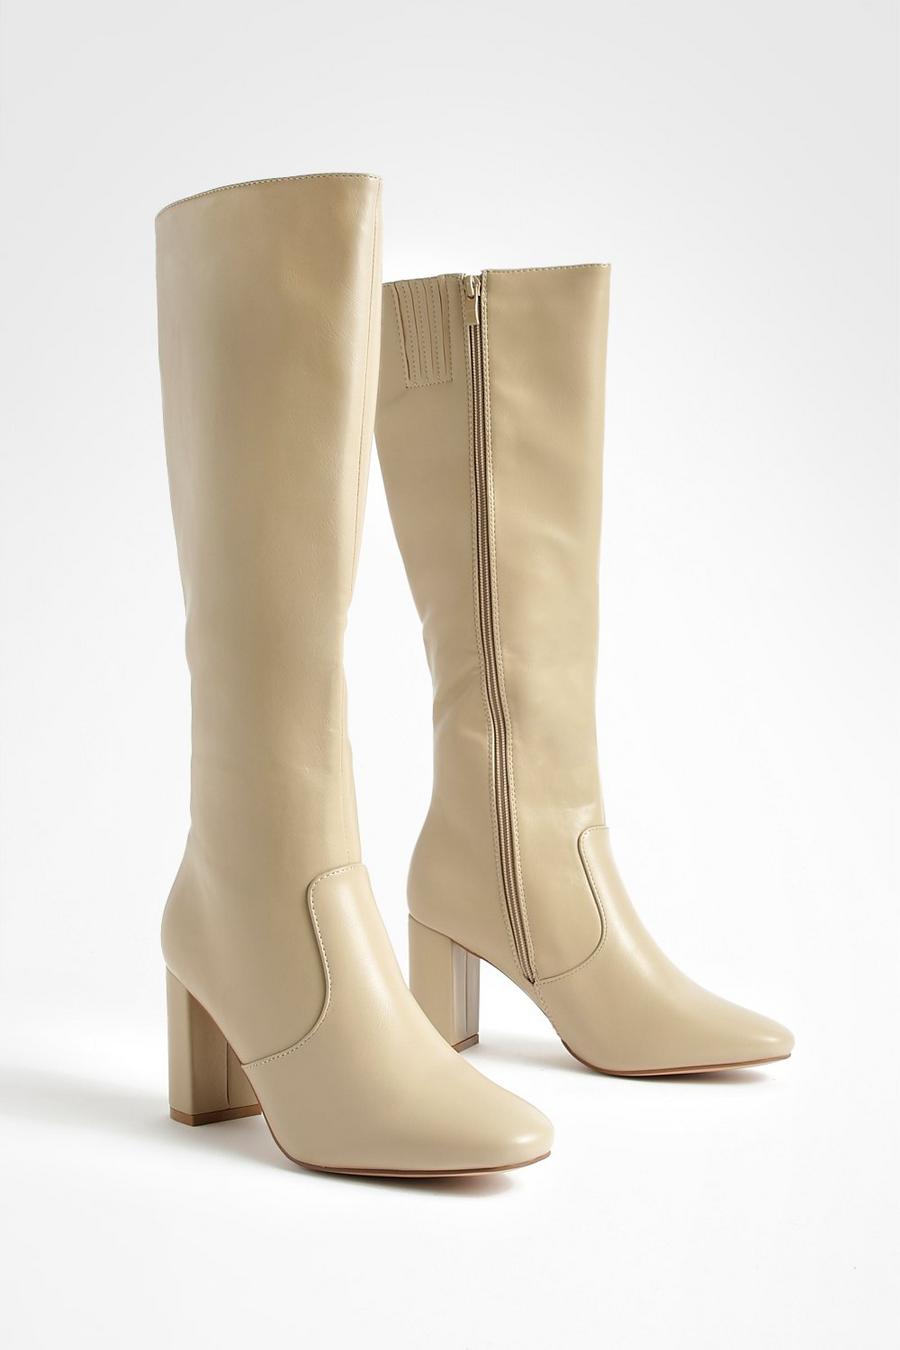 Kniehohe Stiefel mit Blockabsatz, Cream blanc